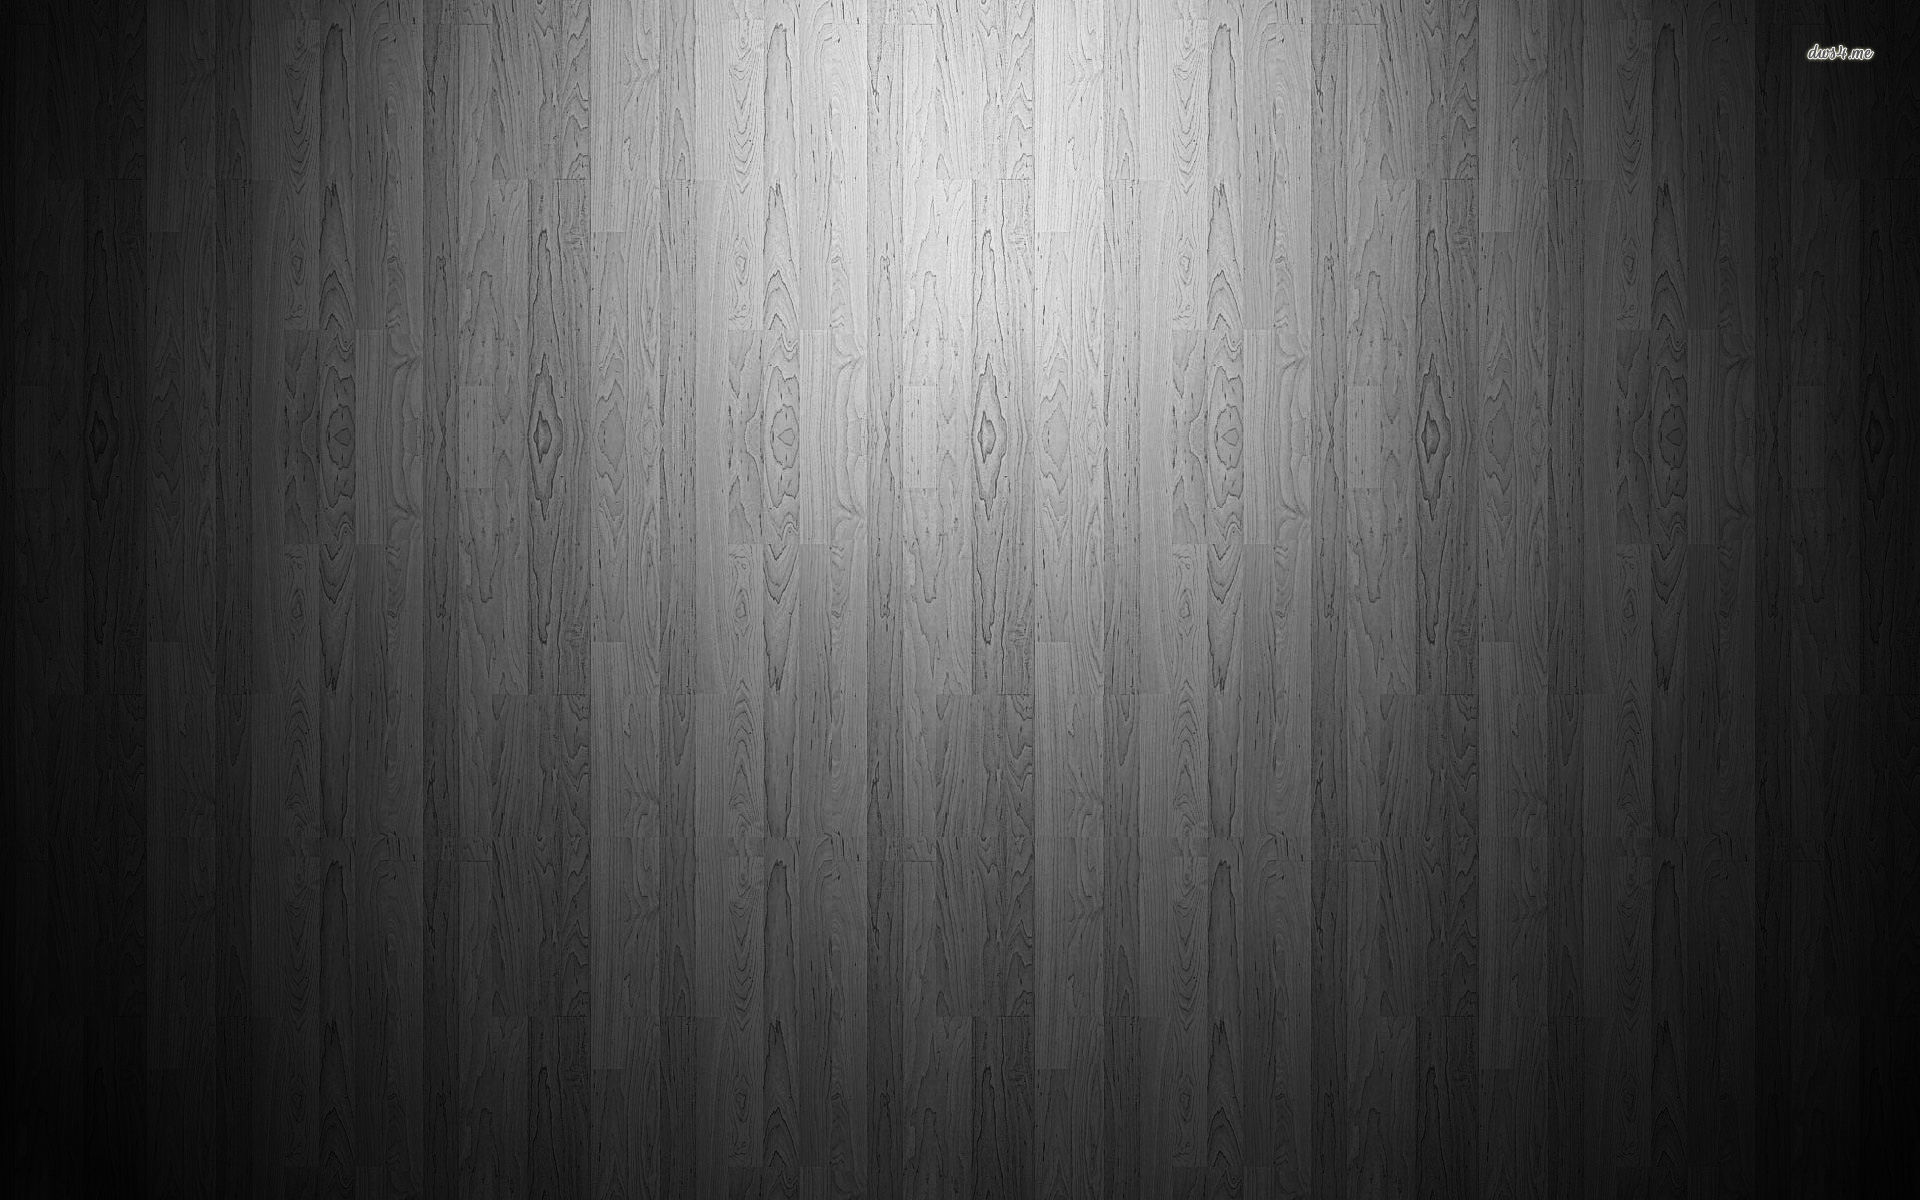 Grey hardwood floor wallpaper - Abstract wallpapers -